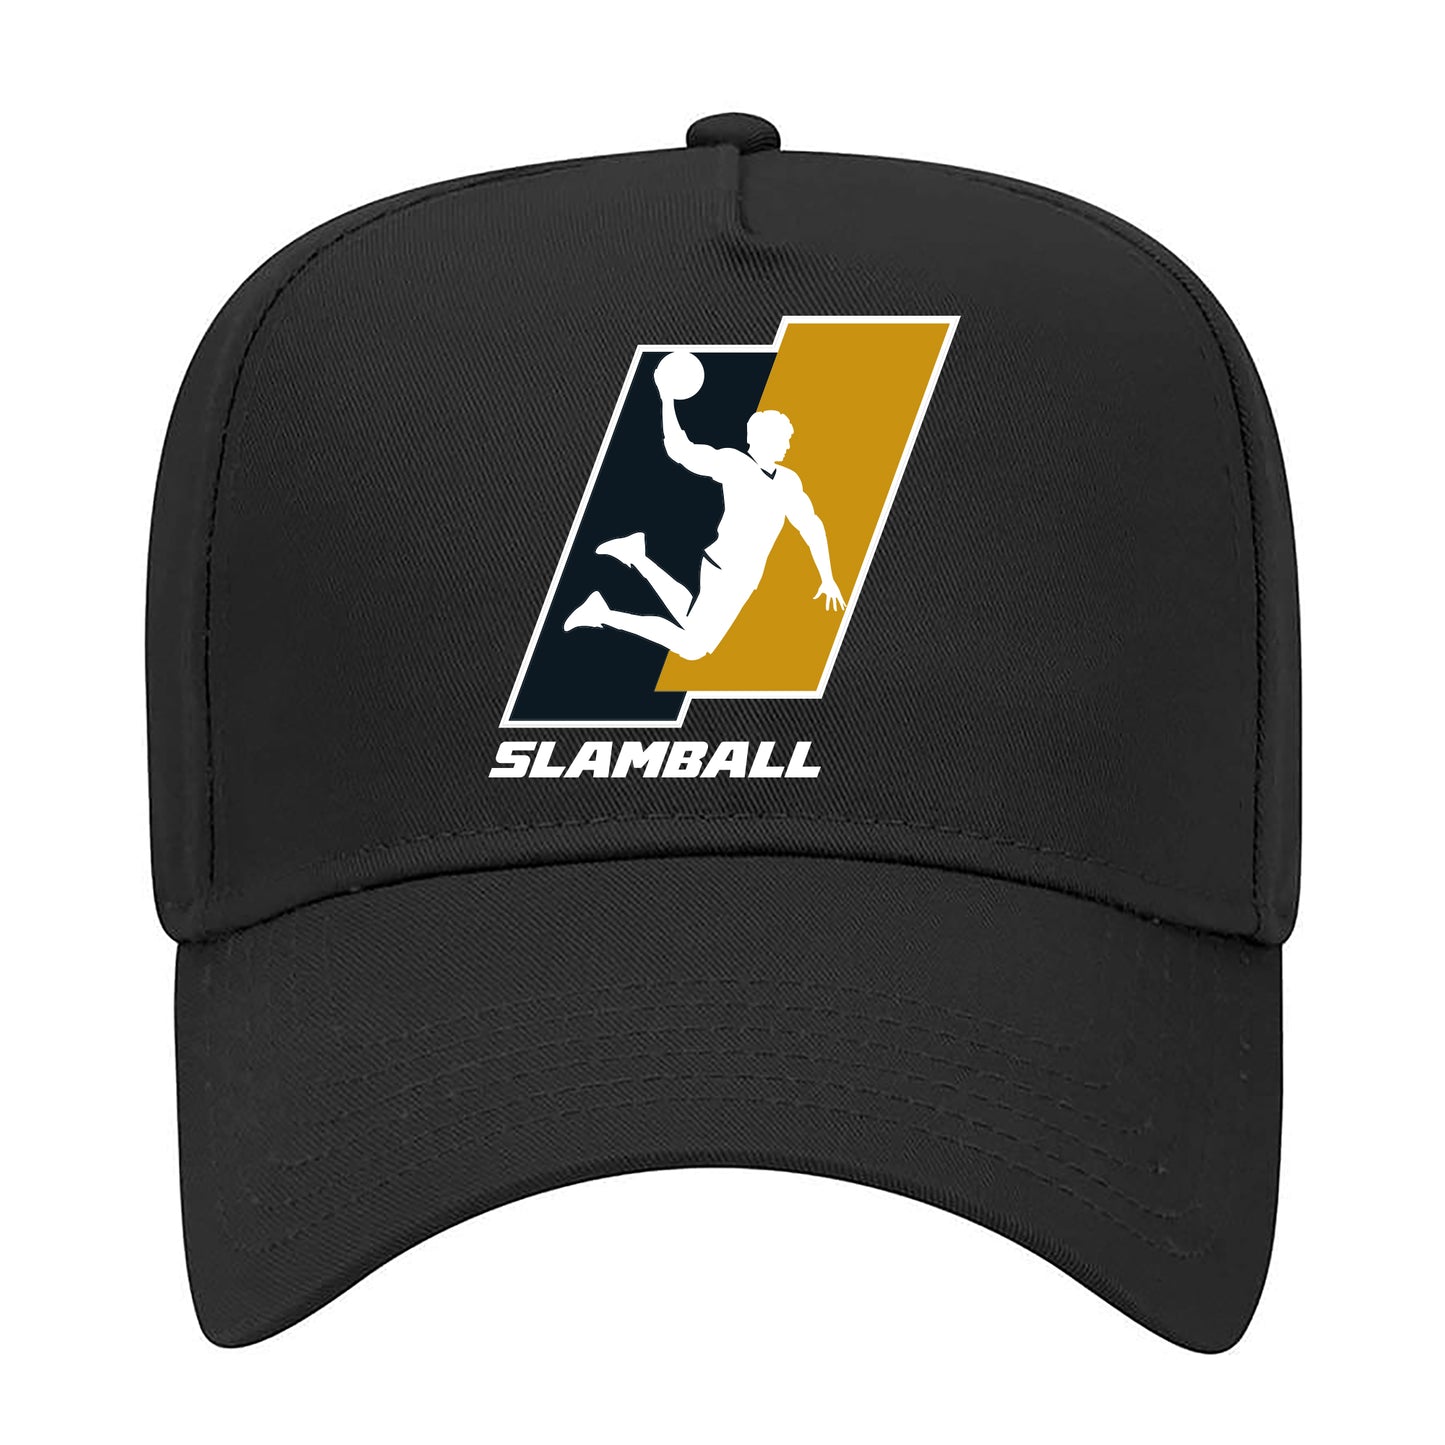 SLAMBALL League Hats - Black